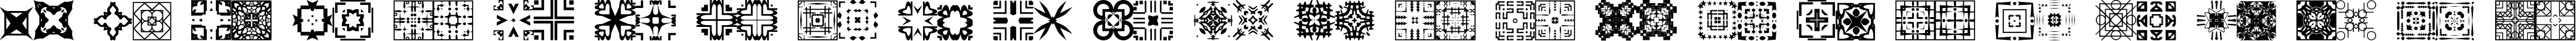 Пример написания английского алфавита шрифтом FontCo Designs 1